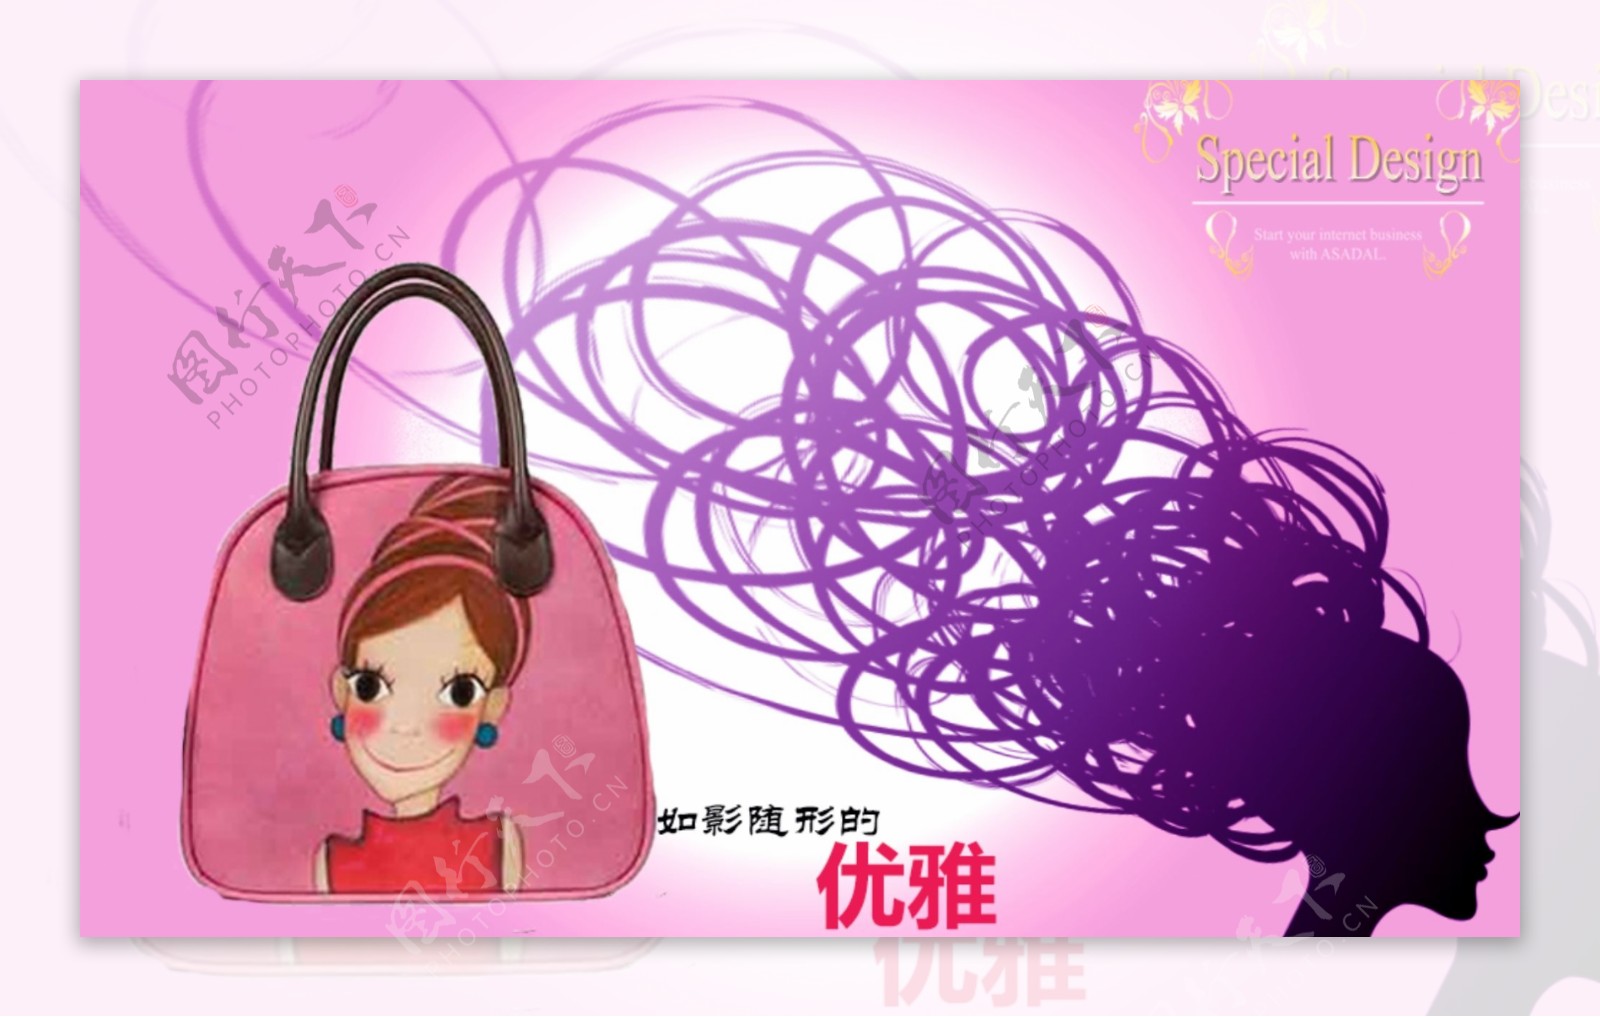 粉紫色系优雅型手提包广告